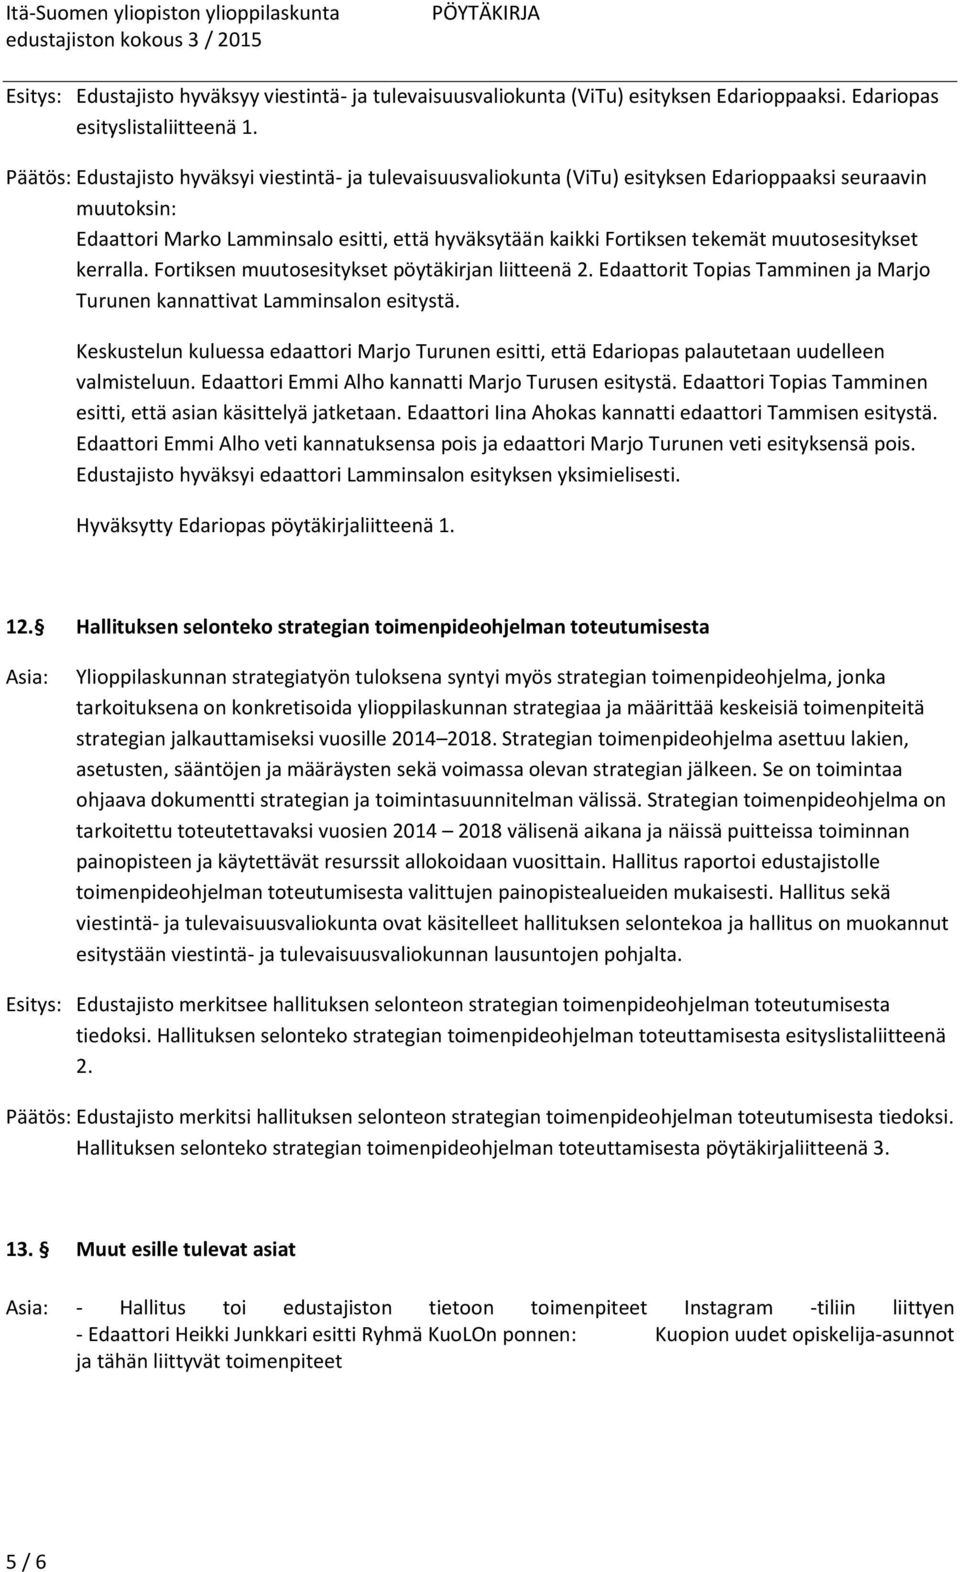 muutosesitykset kerralla. Fortiksen muutosesitykset pöytäkirjan liitteenä 2. Edaattorit Topias Tamminen ja Marjo Turunen kannattivat Lamminsalon esitystä.